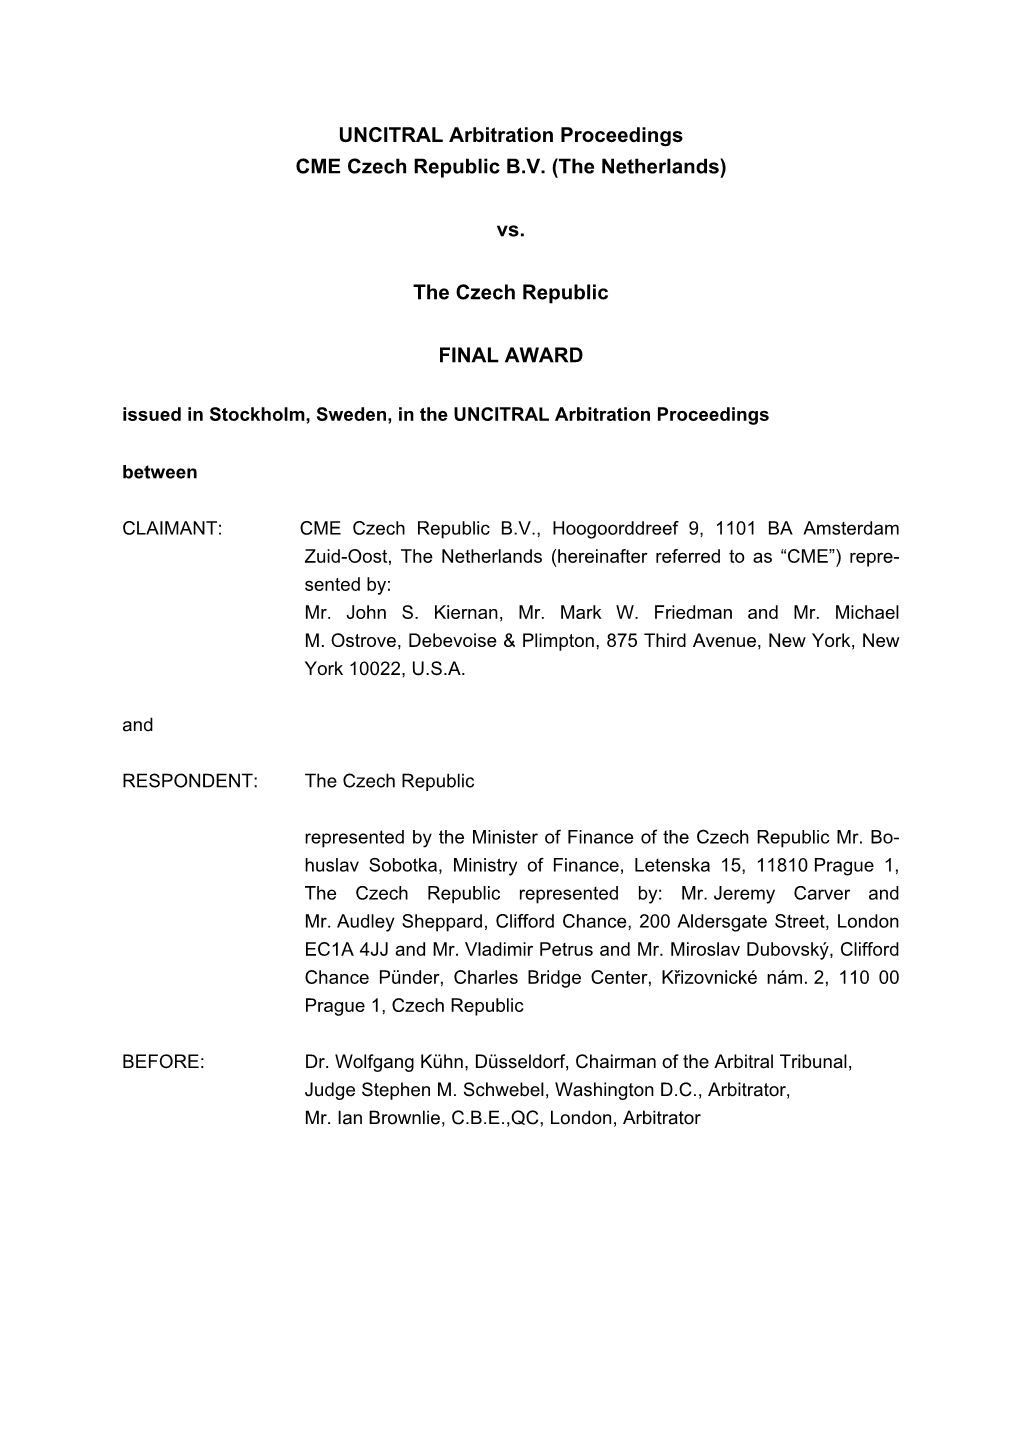 UNCITRAL Arbitration Proceedings CME Czech Republic BV